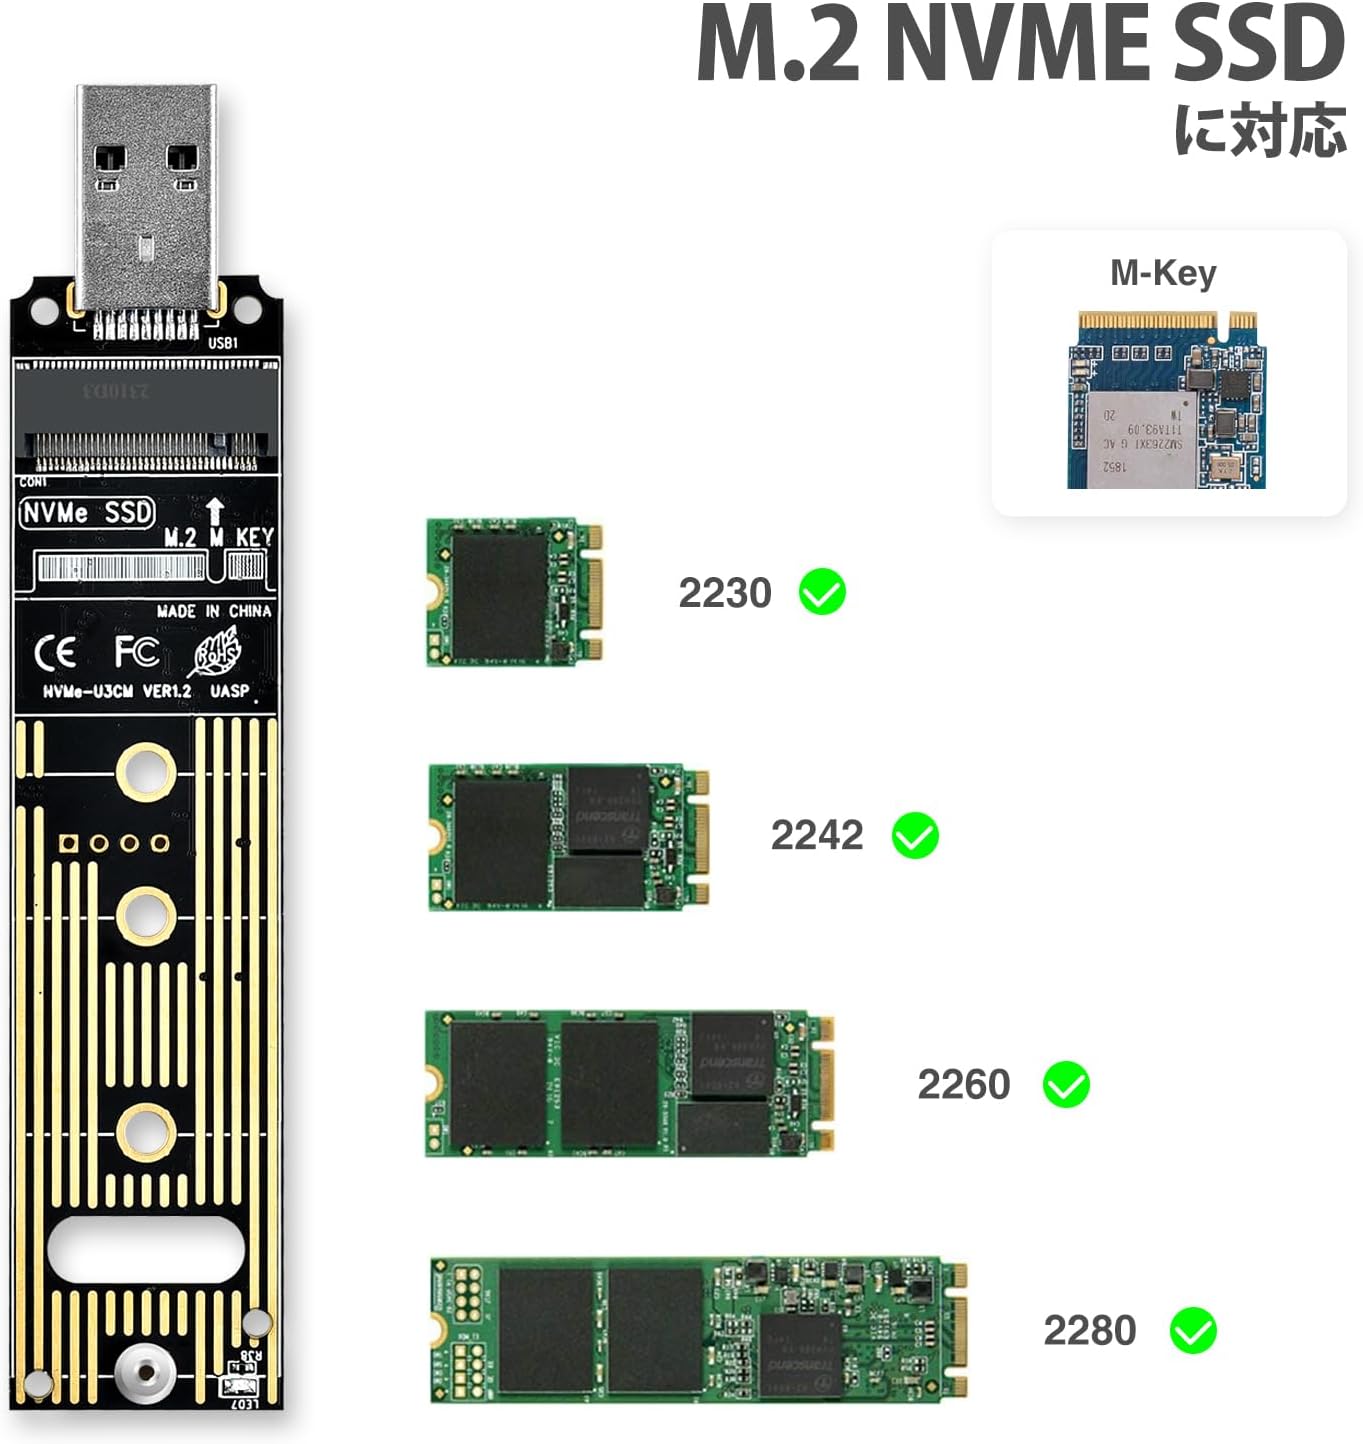 M.2 USB 変換アダプタ NVME/PCIE 対応 USB3.1 Gen2 10Gbps USB3.0 USB2.0 m.2 usb 変換 m.2変換アダプター JMS583高性能チップ M key 2230/2242/2260/2280 SSD対応 アルミ USB A